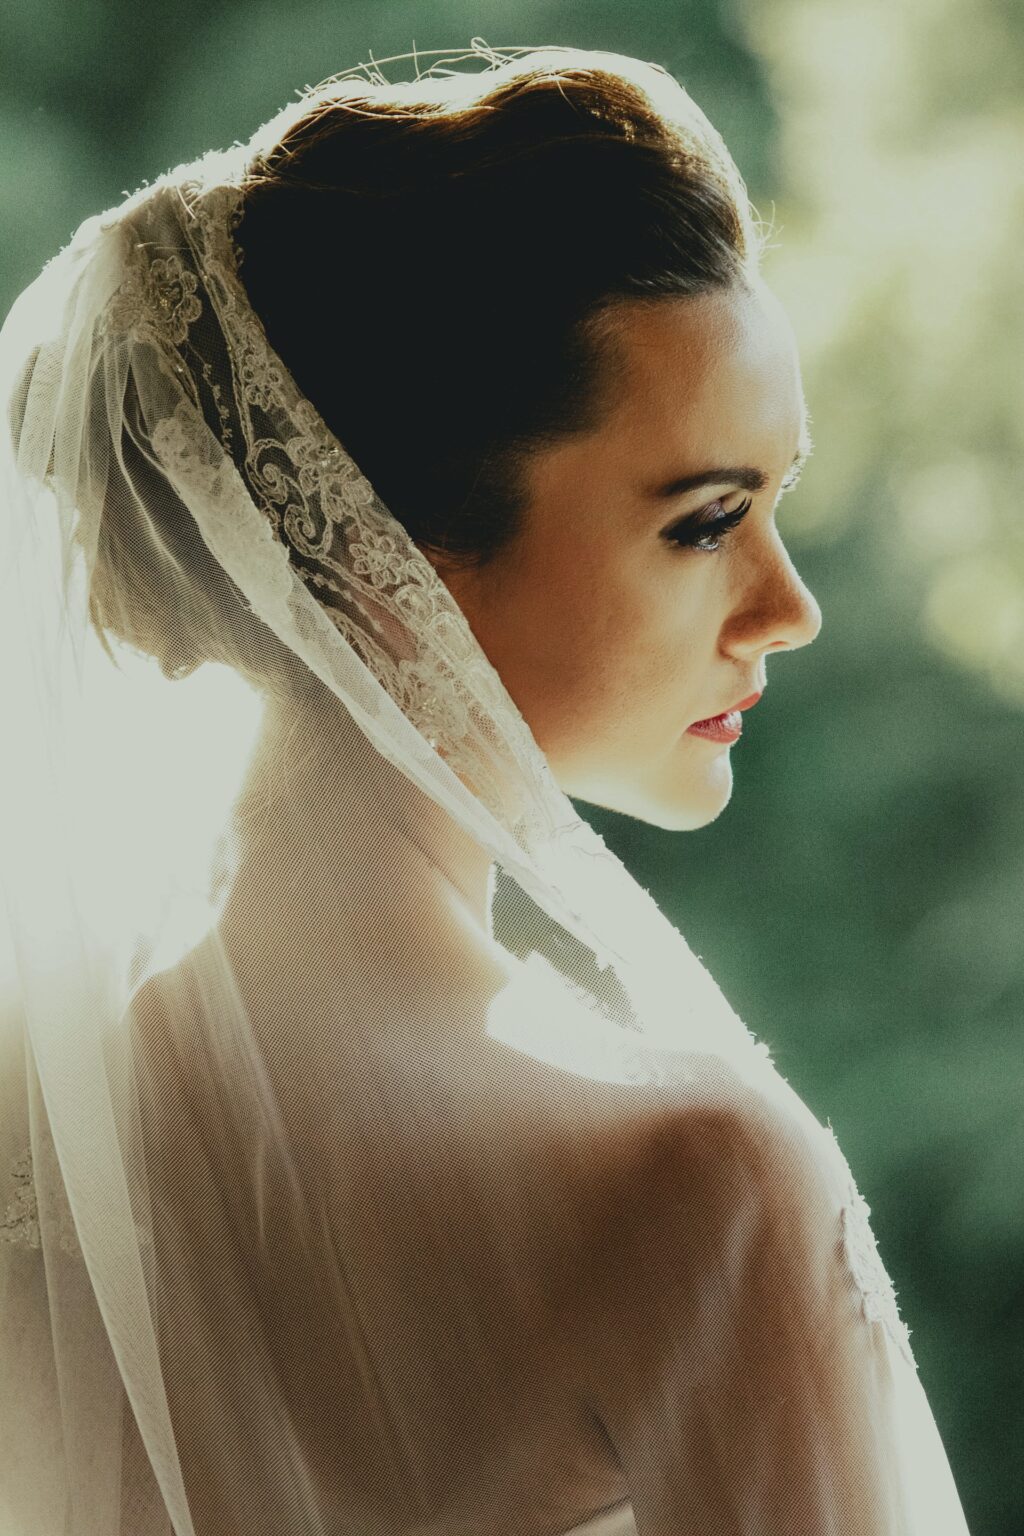 Bröllopsfoto på brud i profil